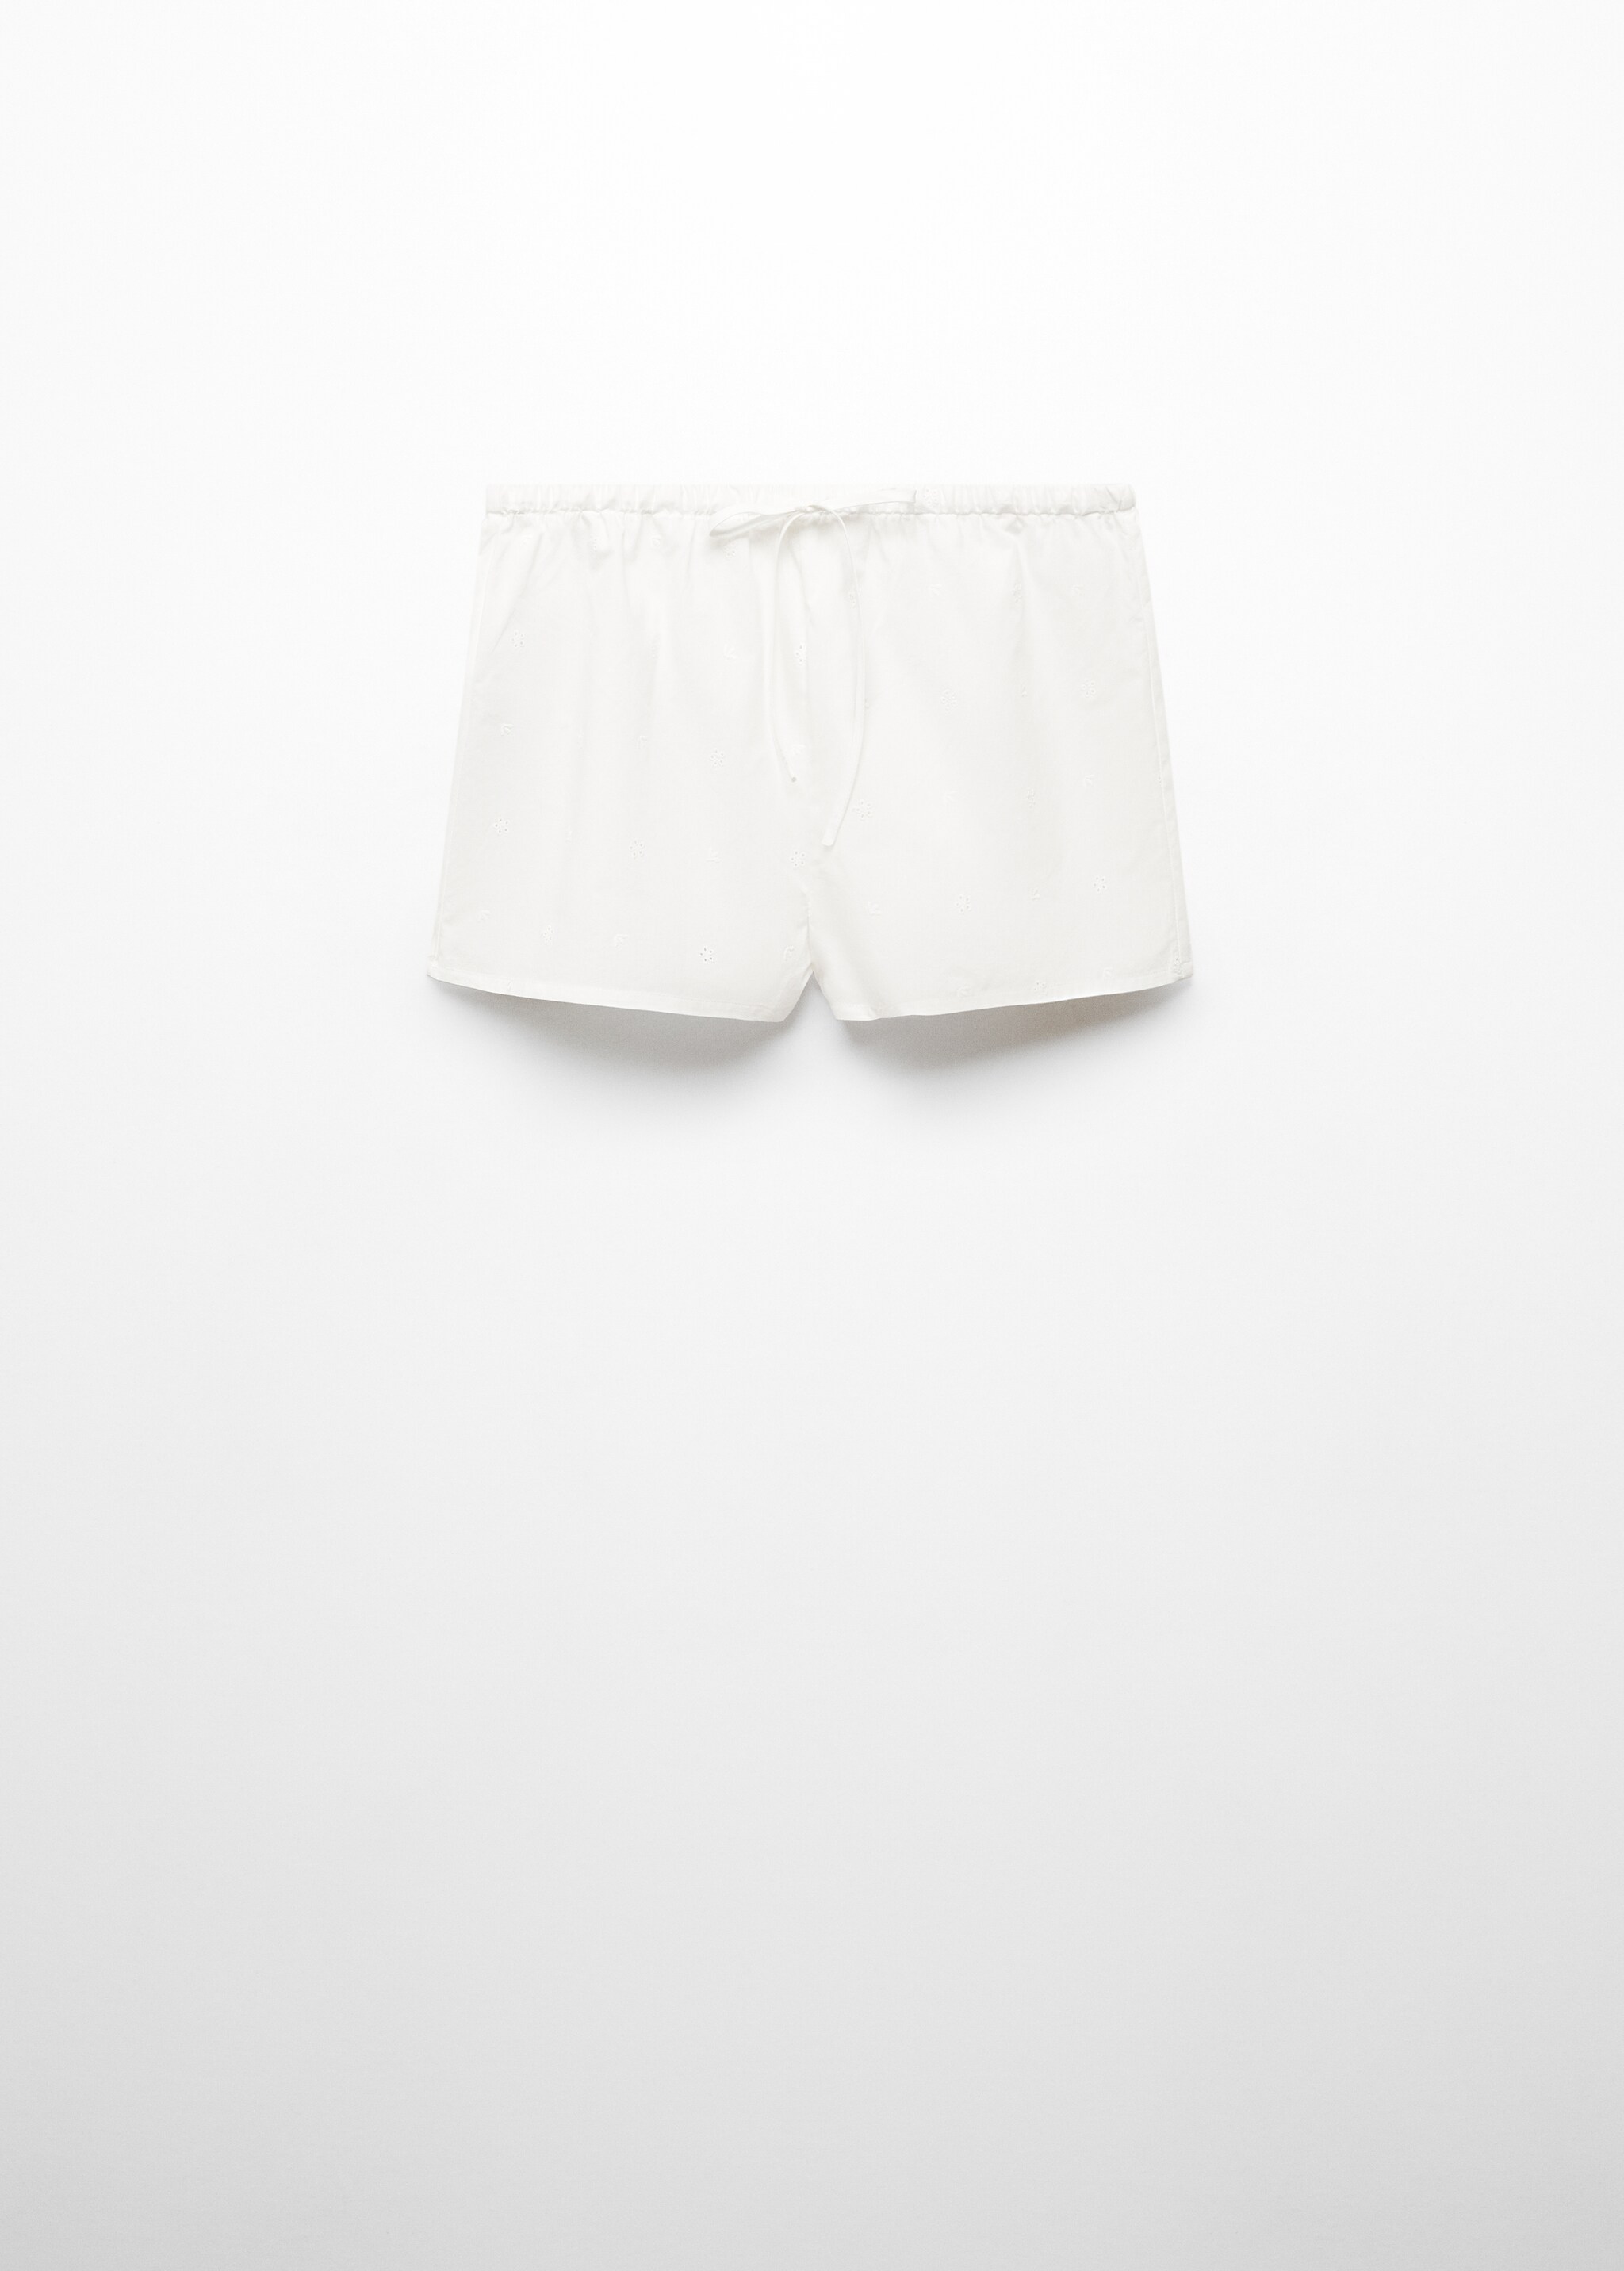 Shorts pijama algodón detalles calados - Artículo sin modelo